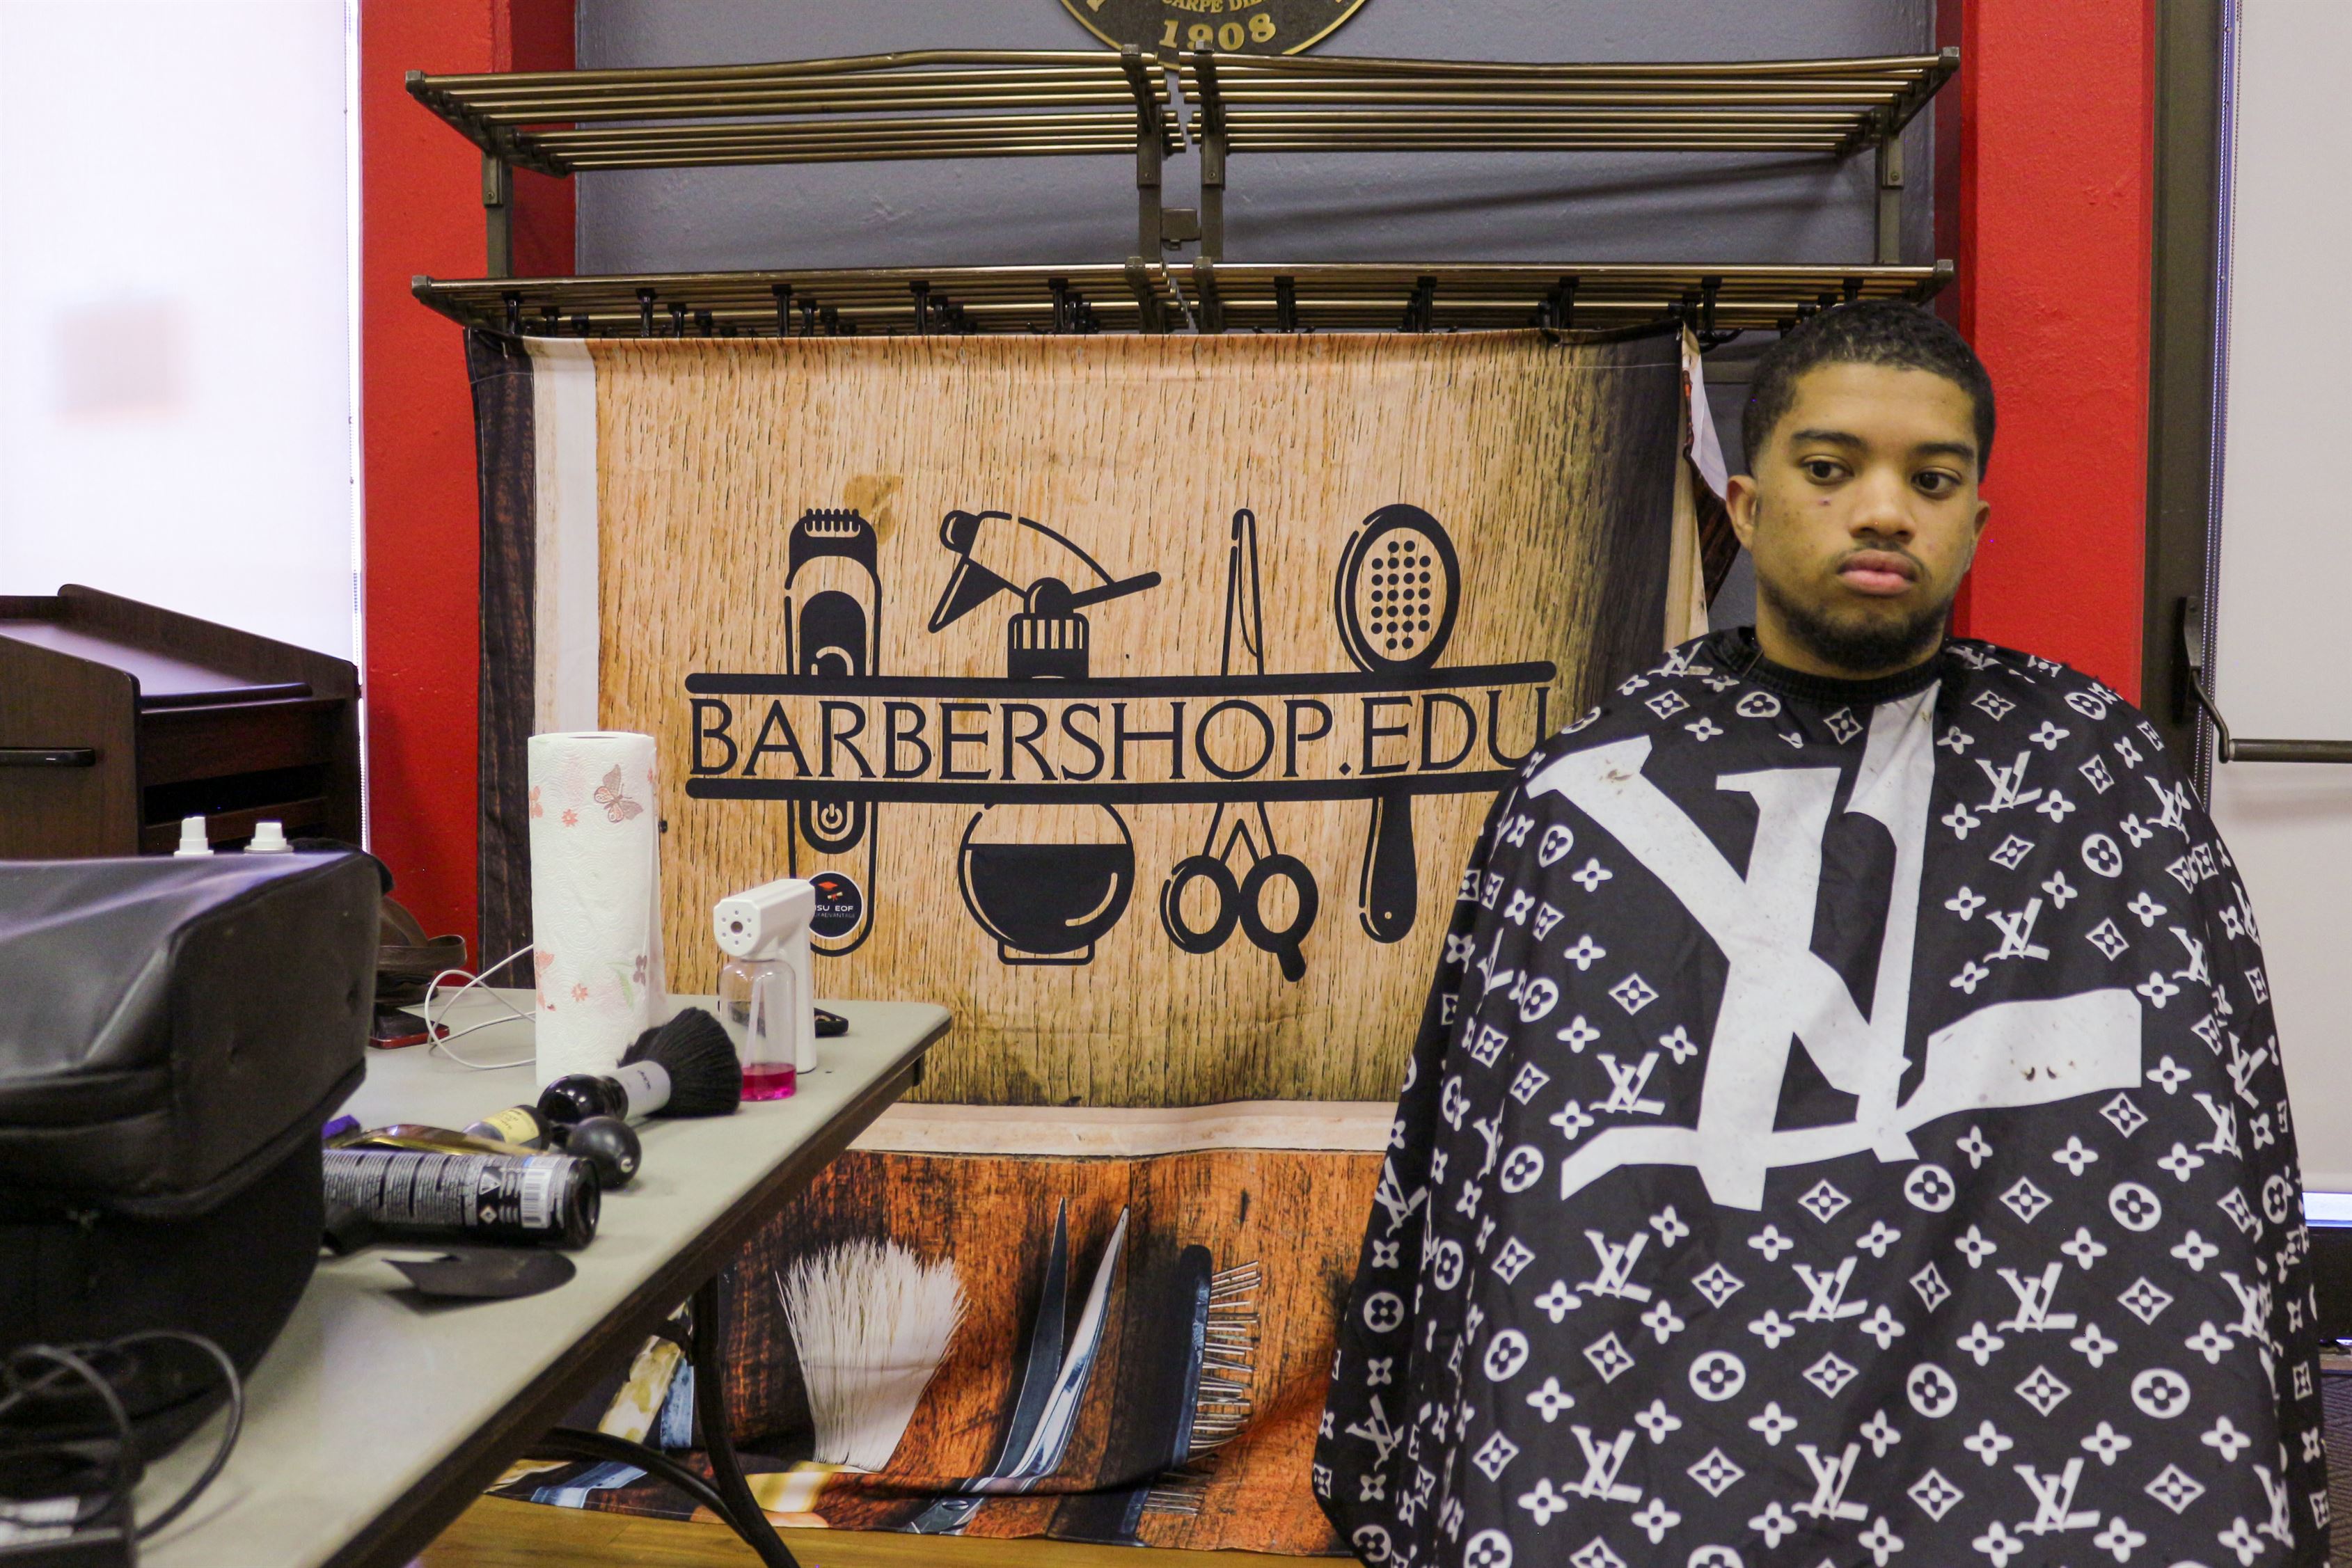 EOF Barbershop: Making Men Leaders the Old School Way - The